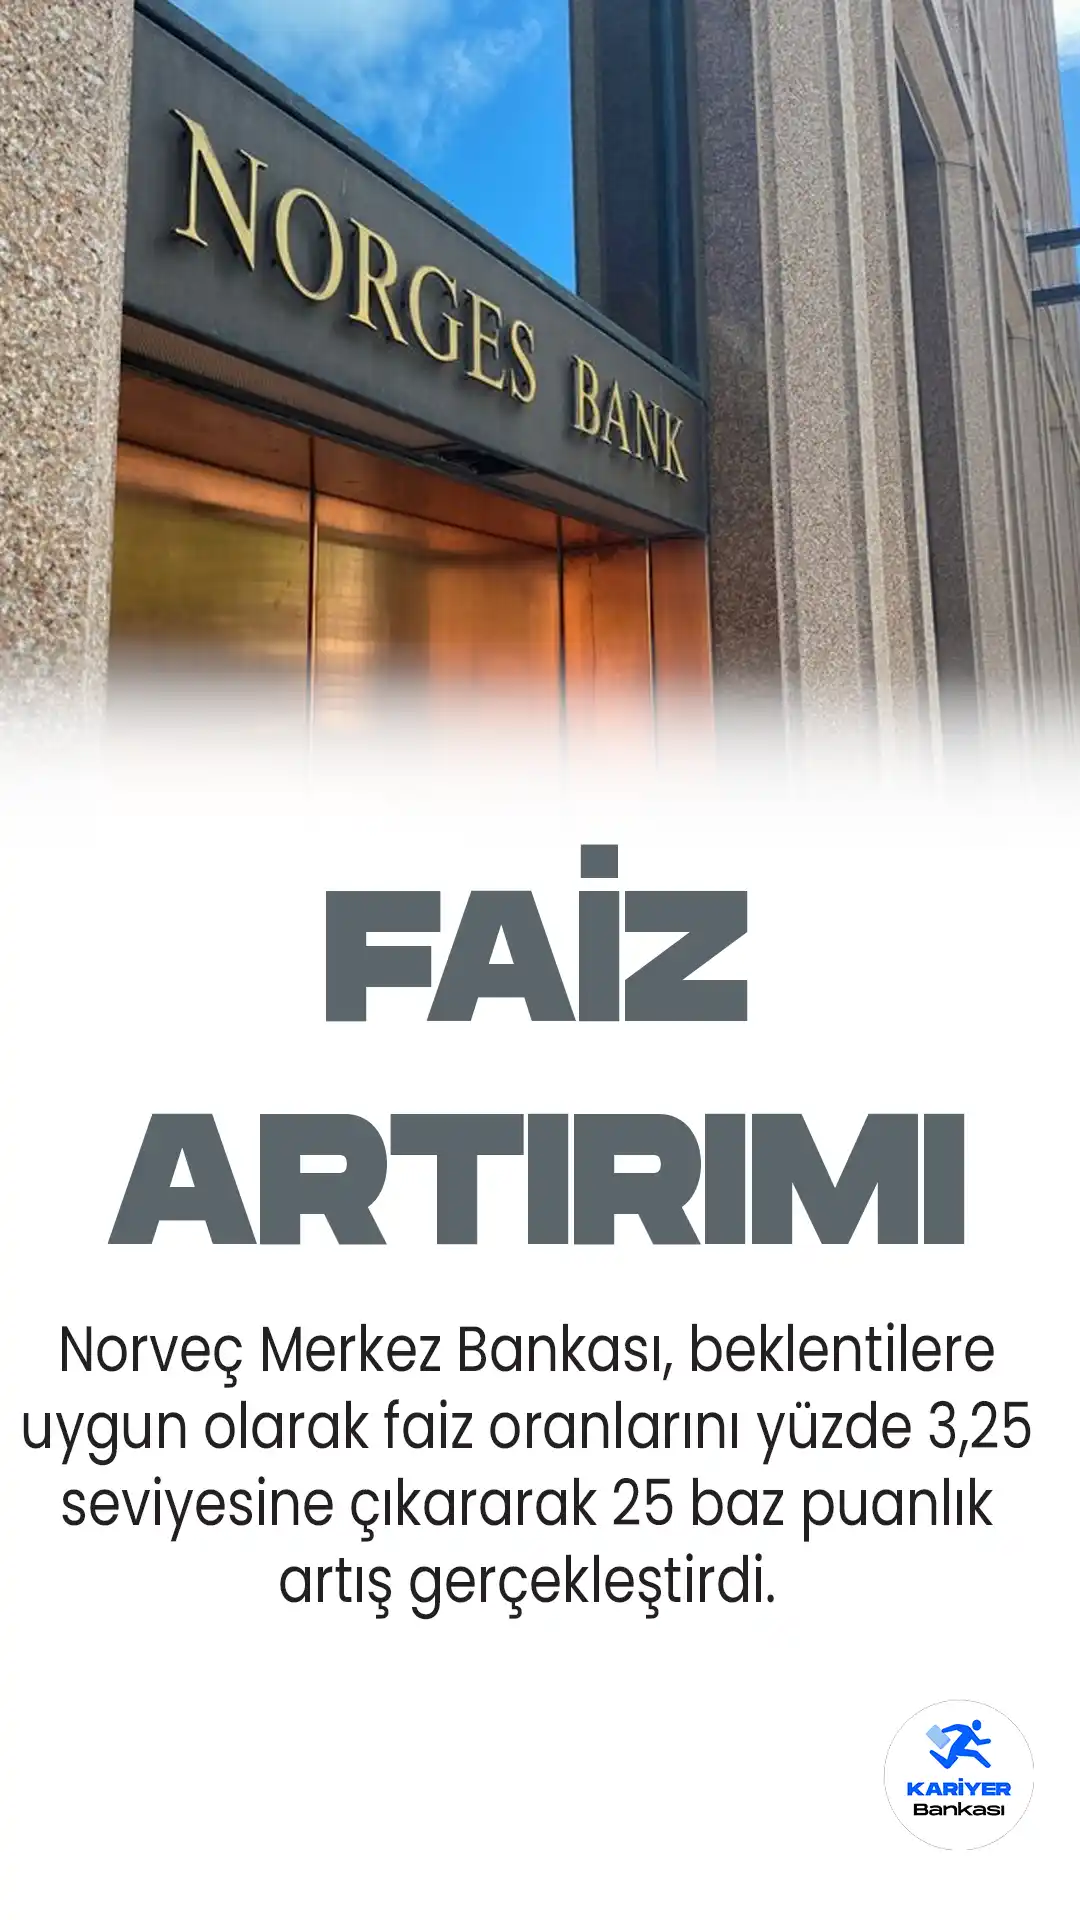 Norveç Merkez Bankası, beklentilere uygun olarak faiz oranlarını yüzde 3,25 seviyesine çıkararak 25 baz puanlık artış gerçekleştirdi.